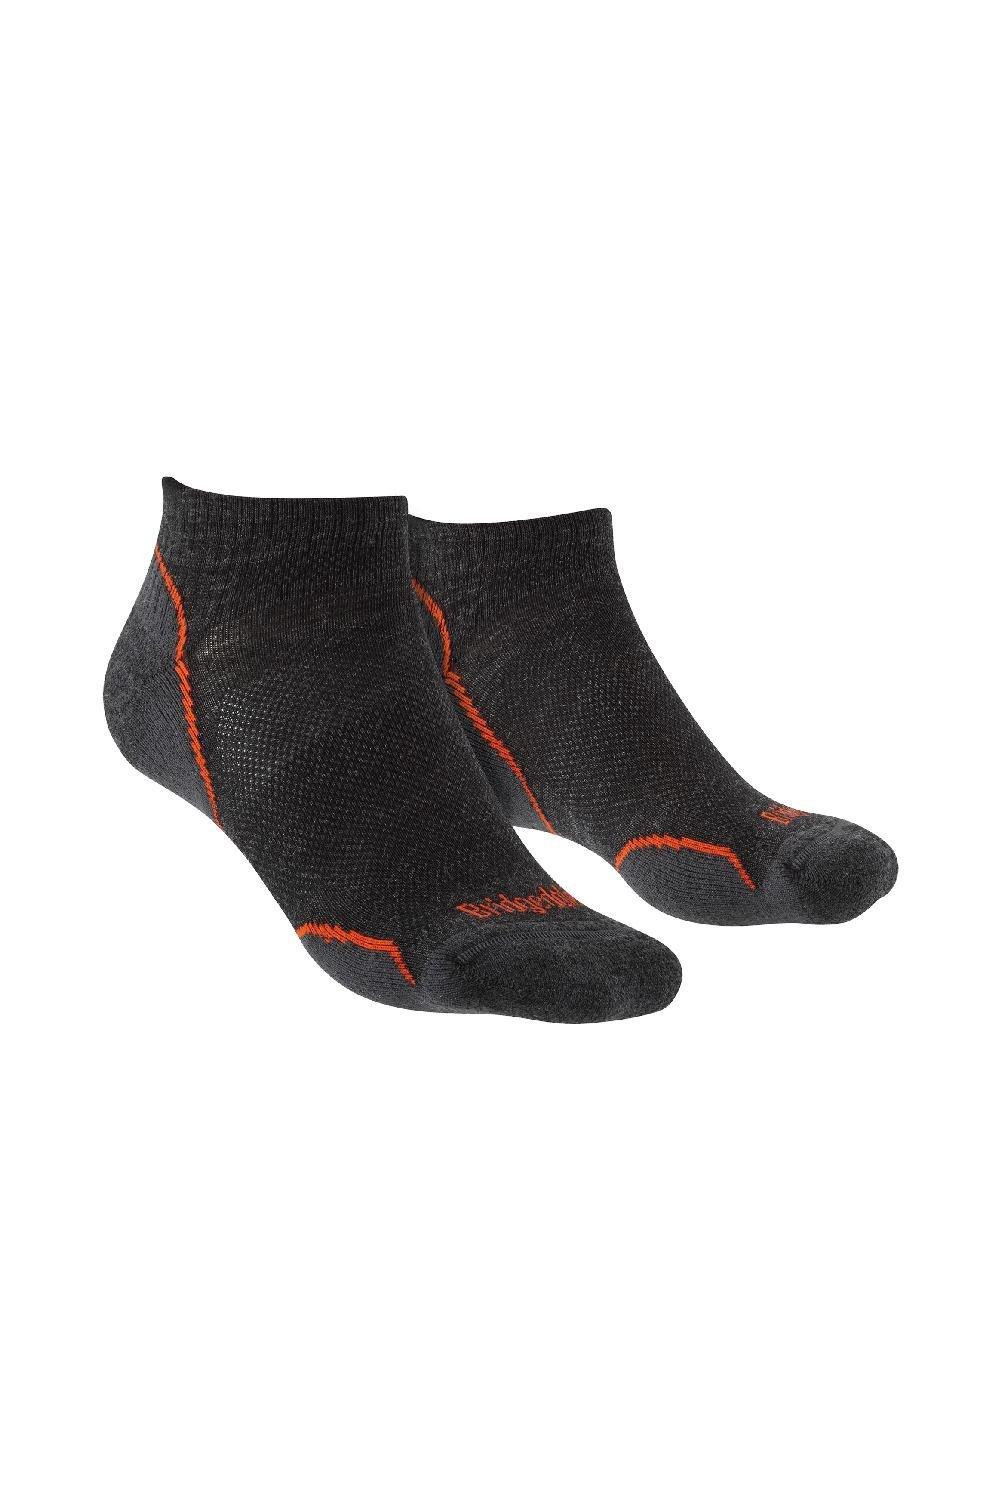 Hiking Ultralight T2 Merino Wool Performance Low Socks